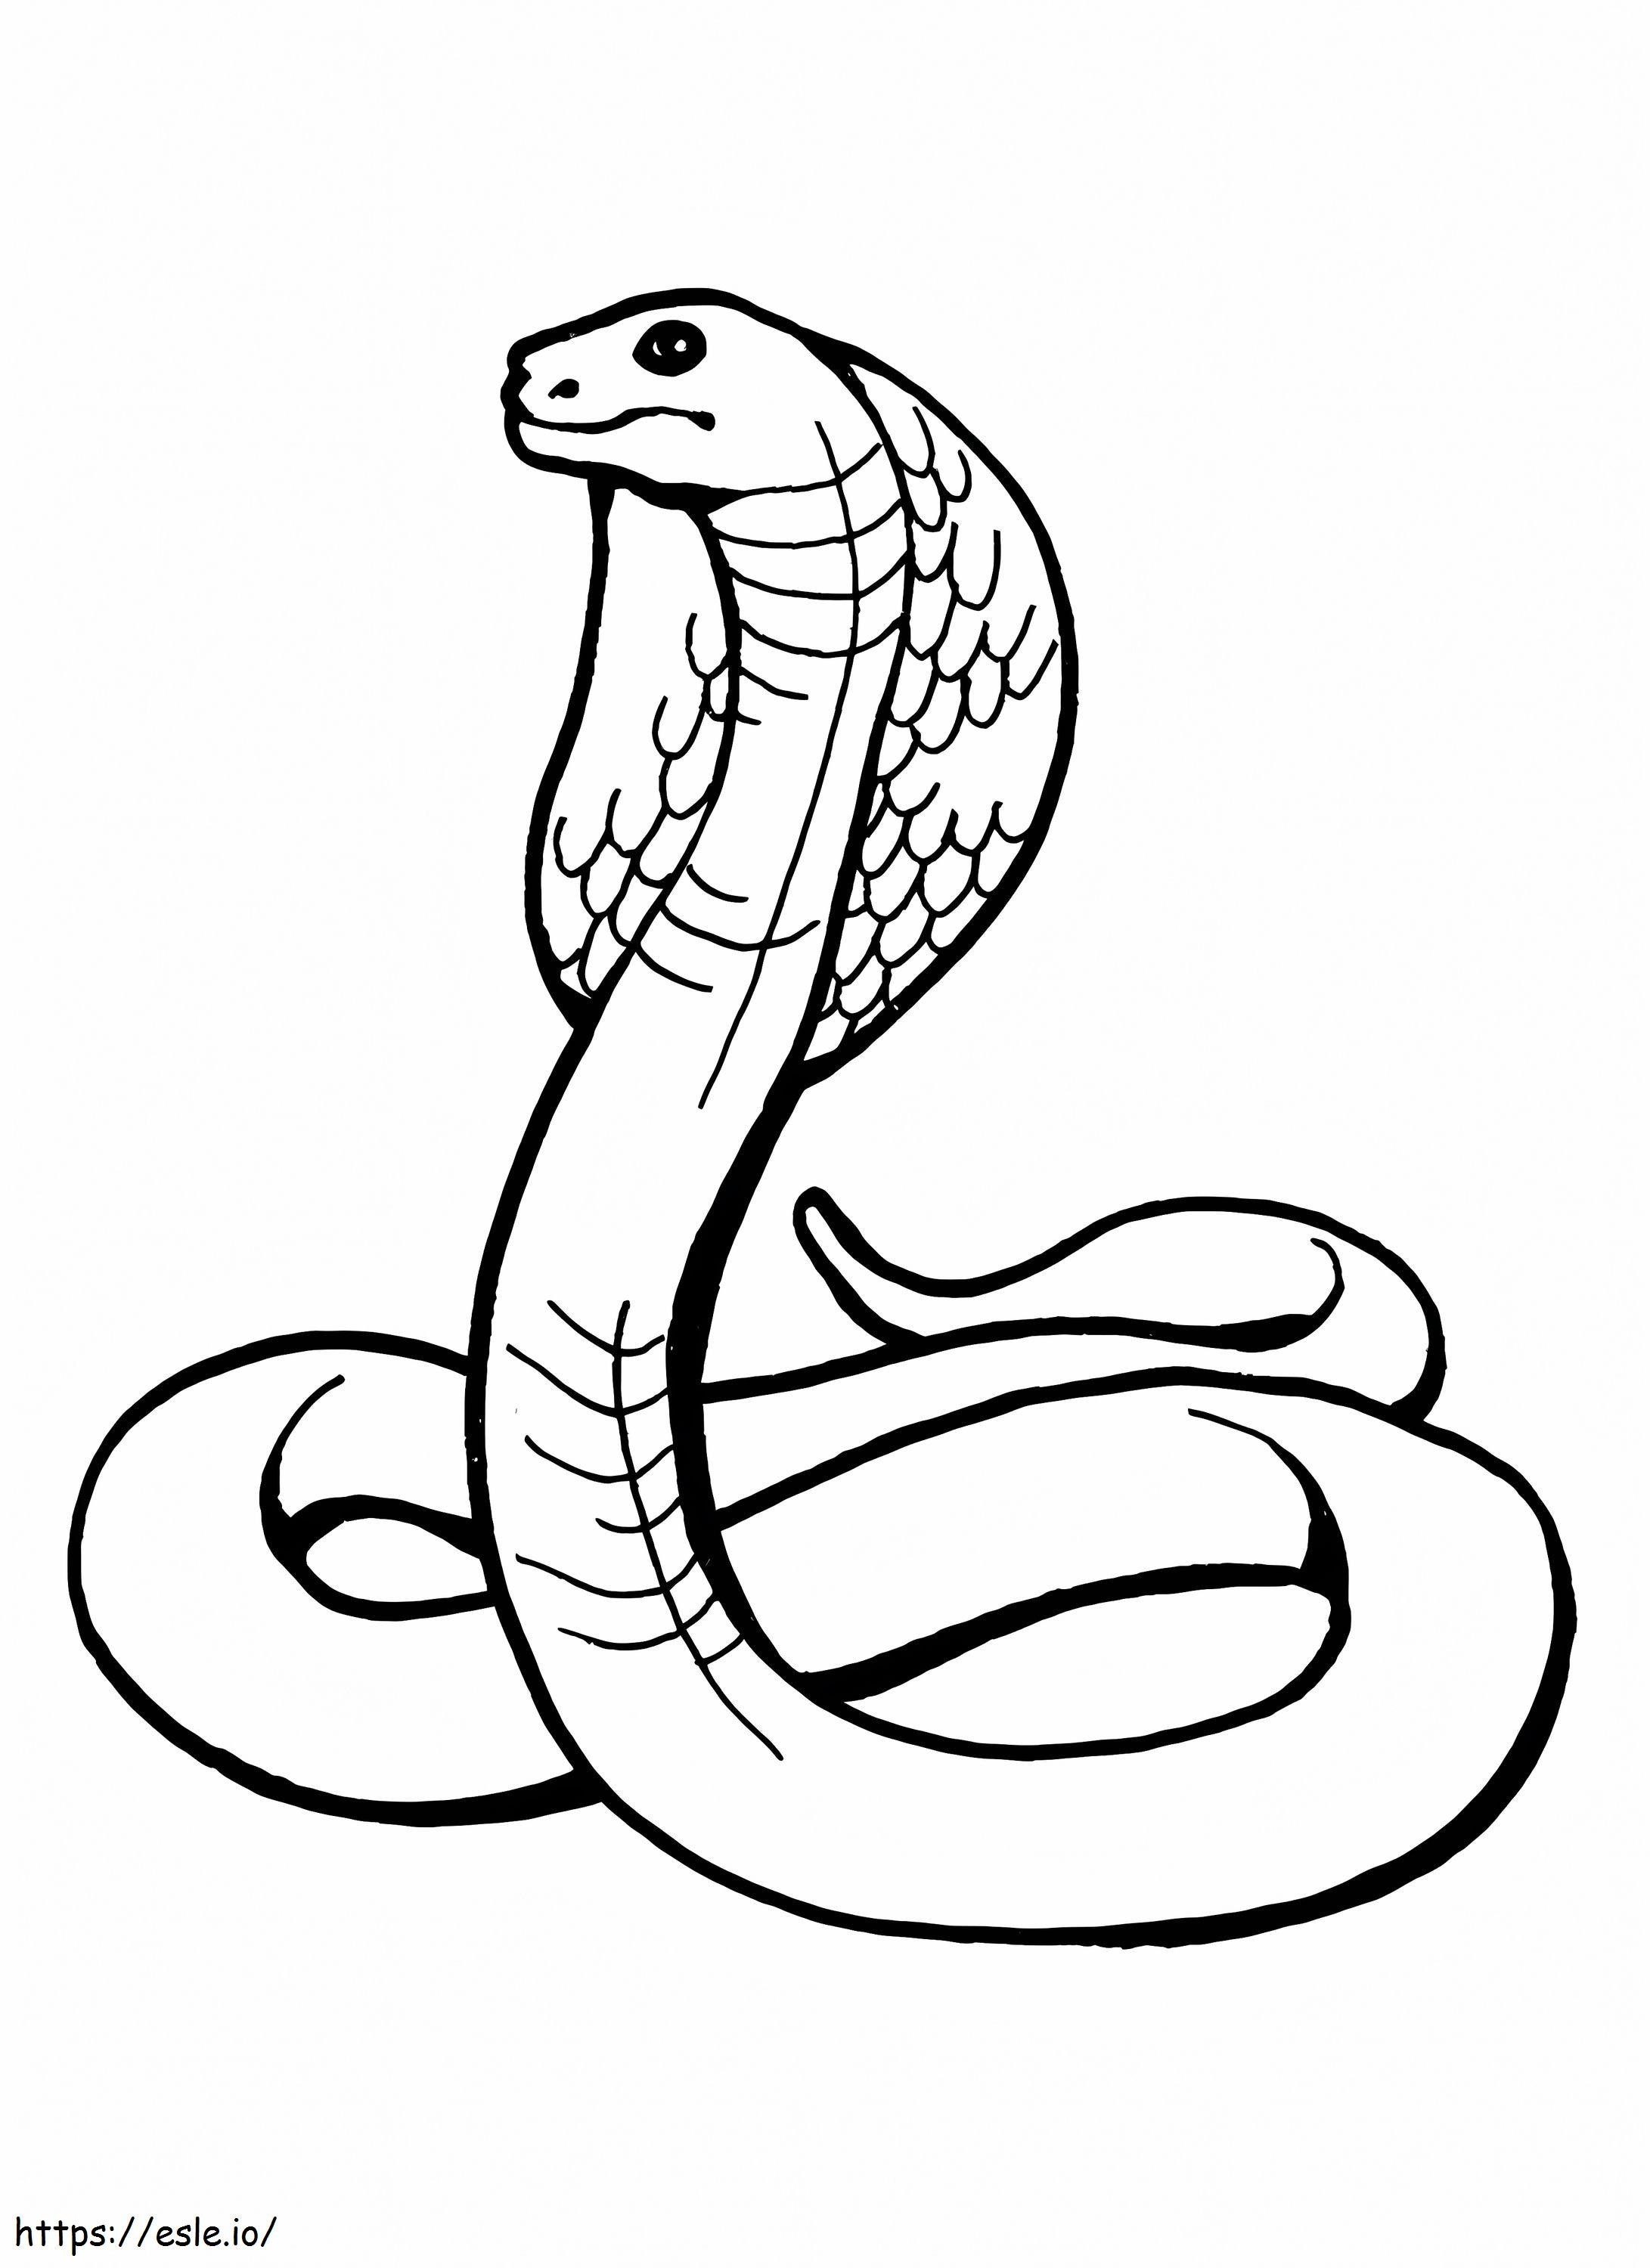 Coole Cobra ausmalbilder